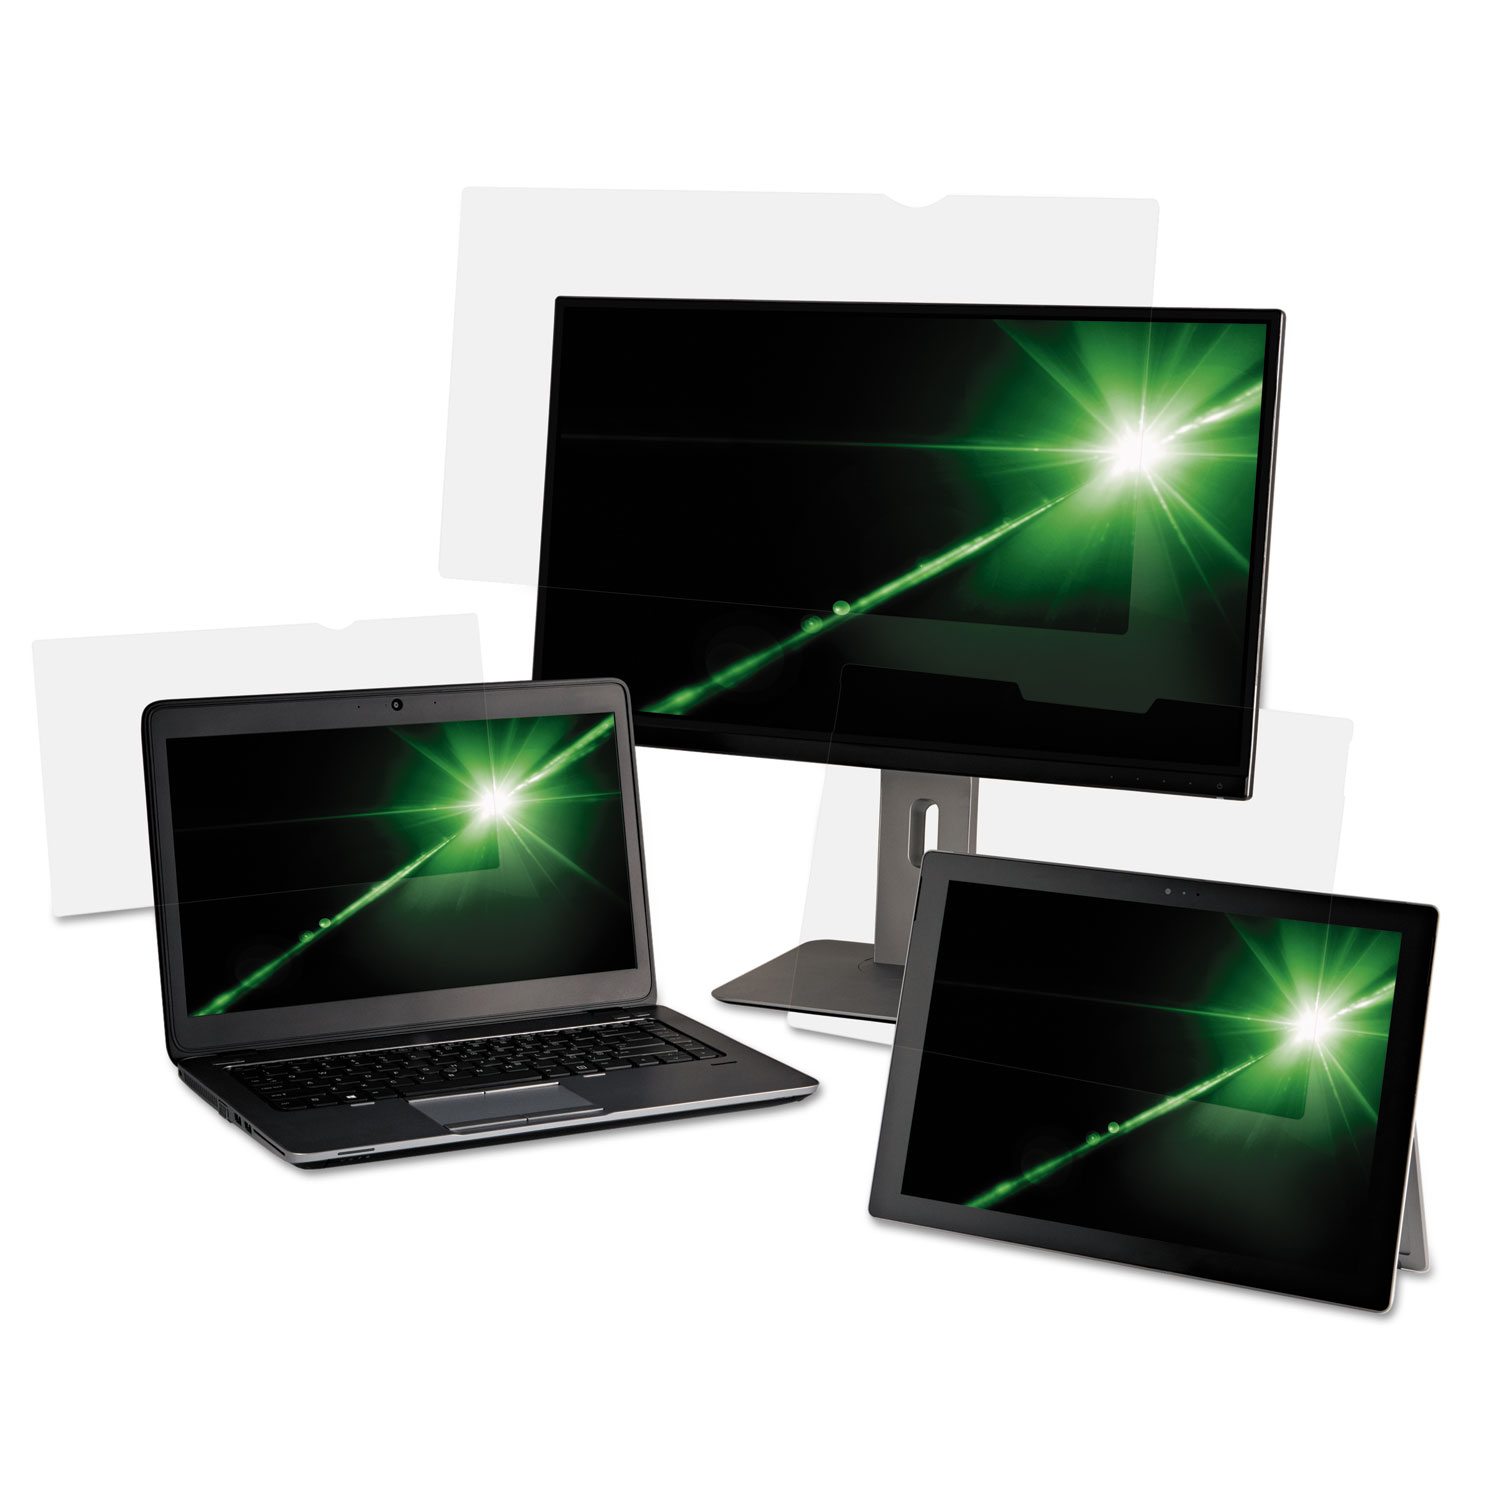  3M AG156W9B Antiglare Frameless Filter for 15.6 Widescreen Laptop, 16:9 Aspect Ratio (MMMAG156W9) 